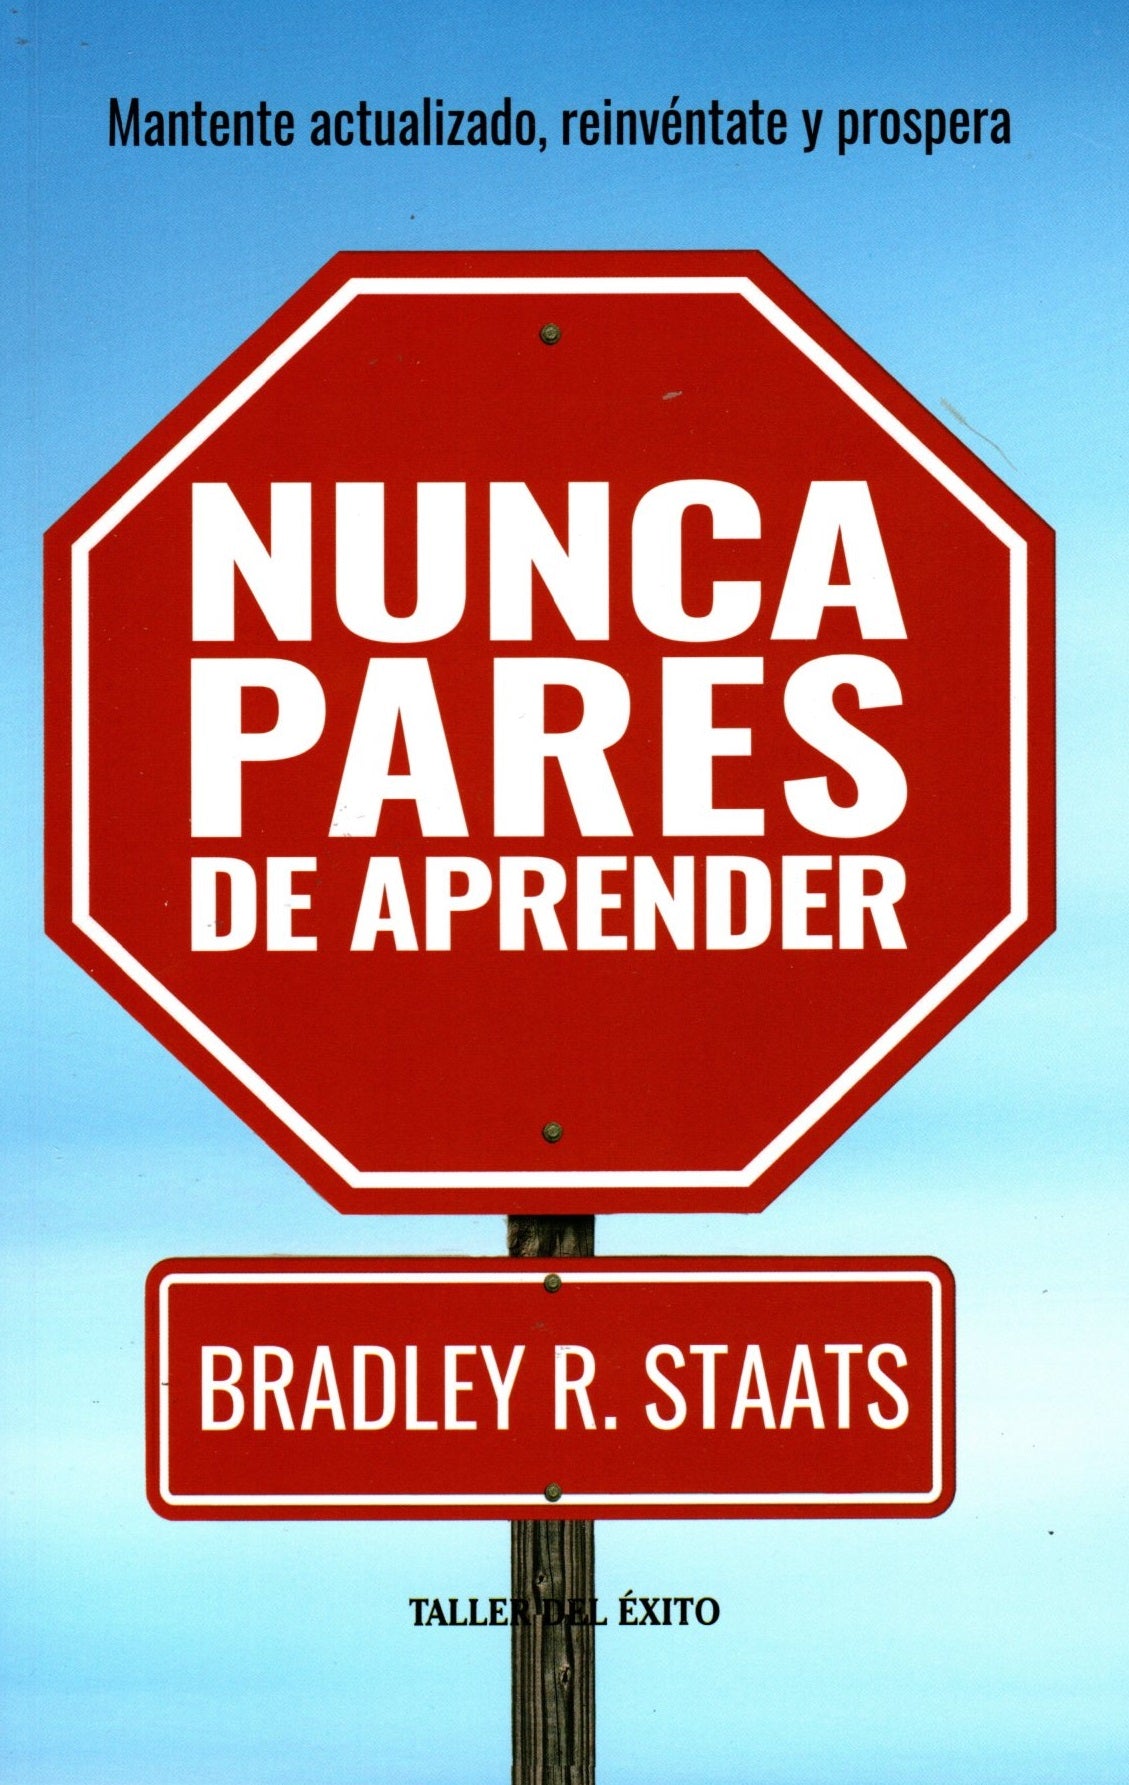 Libro Bradley R. Staats - Nunca pares de aprender